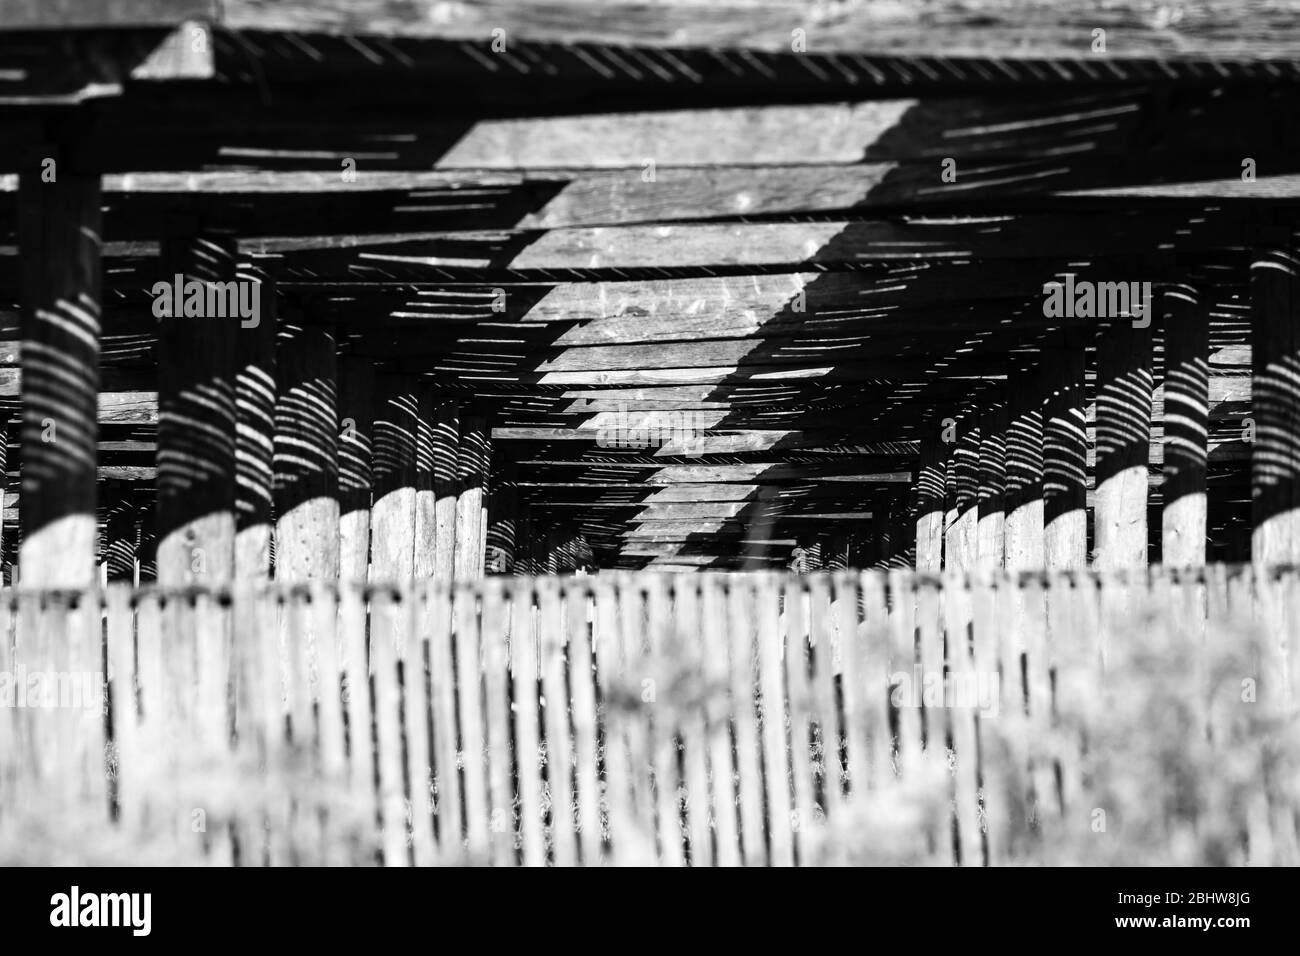 Primo piano di paralume in ginseng realizzato con vecchi torni in legno in bianco e nero, orizzontale Foto Stock